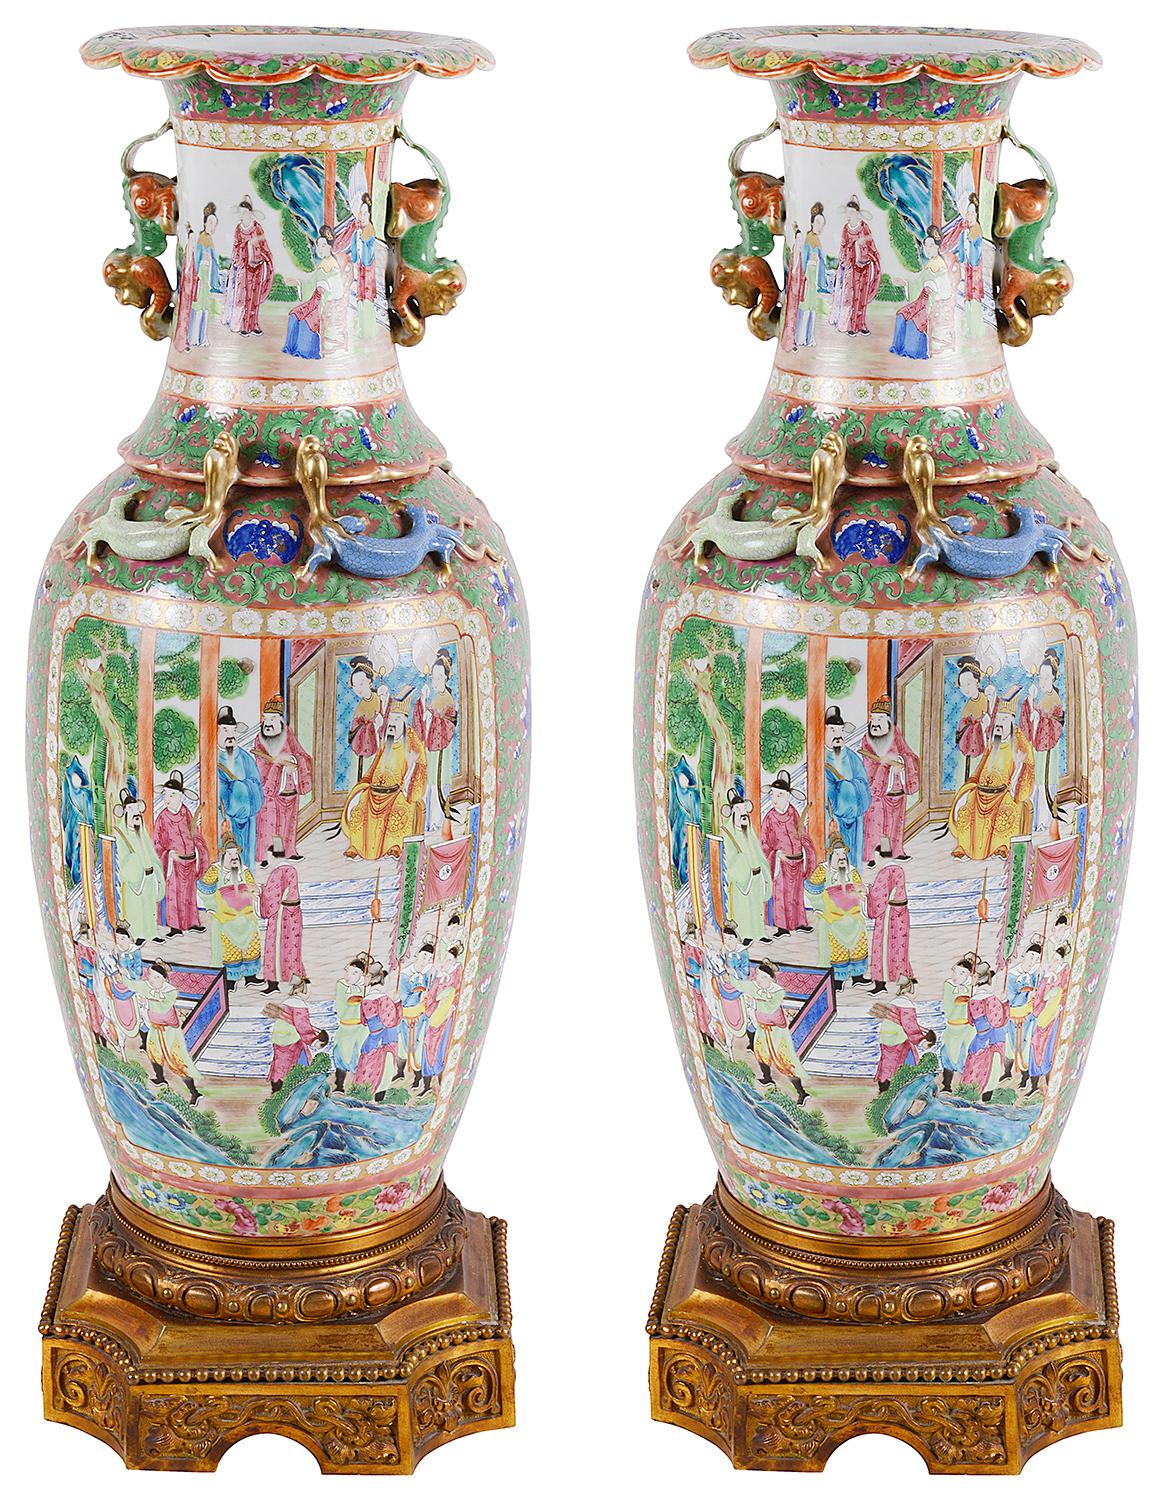 Une paire très impressionnante de vases ou lampes cantonais ou à médaillon rose du 19ème siècle. Chacune d'entre elles présente de merveilleuses couleurs vives, avec des scènes orientales classiques de courtisans se promenant autour de pagodes et de